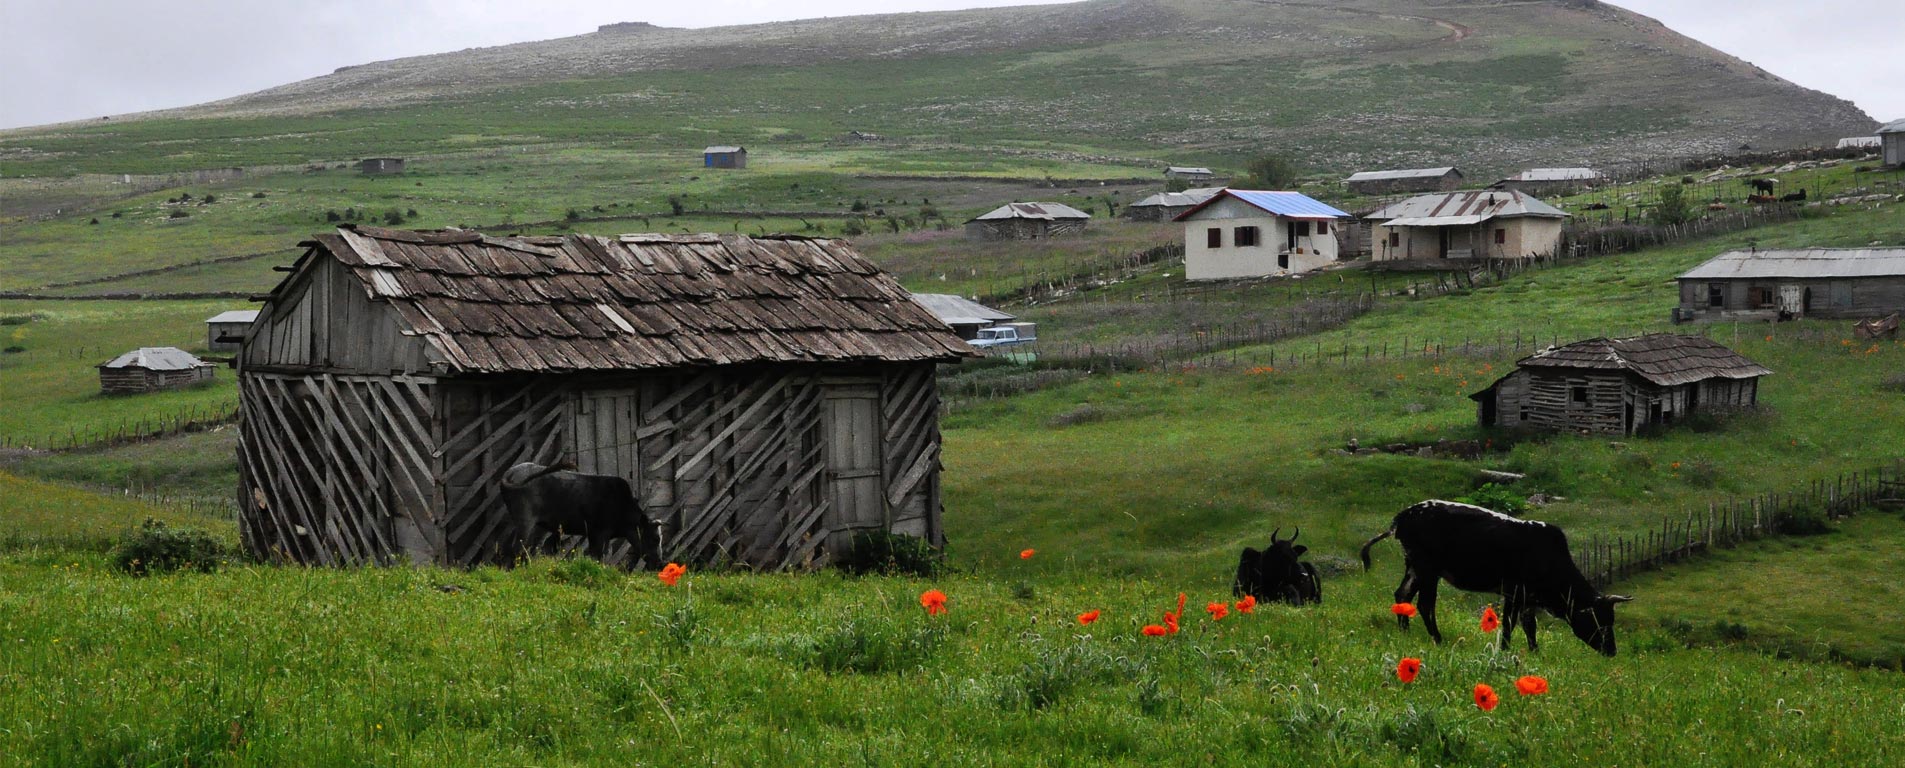 جاذبه های گردشگری روستای سوباتان گیلان